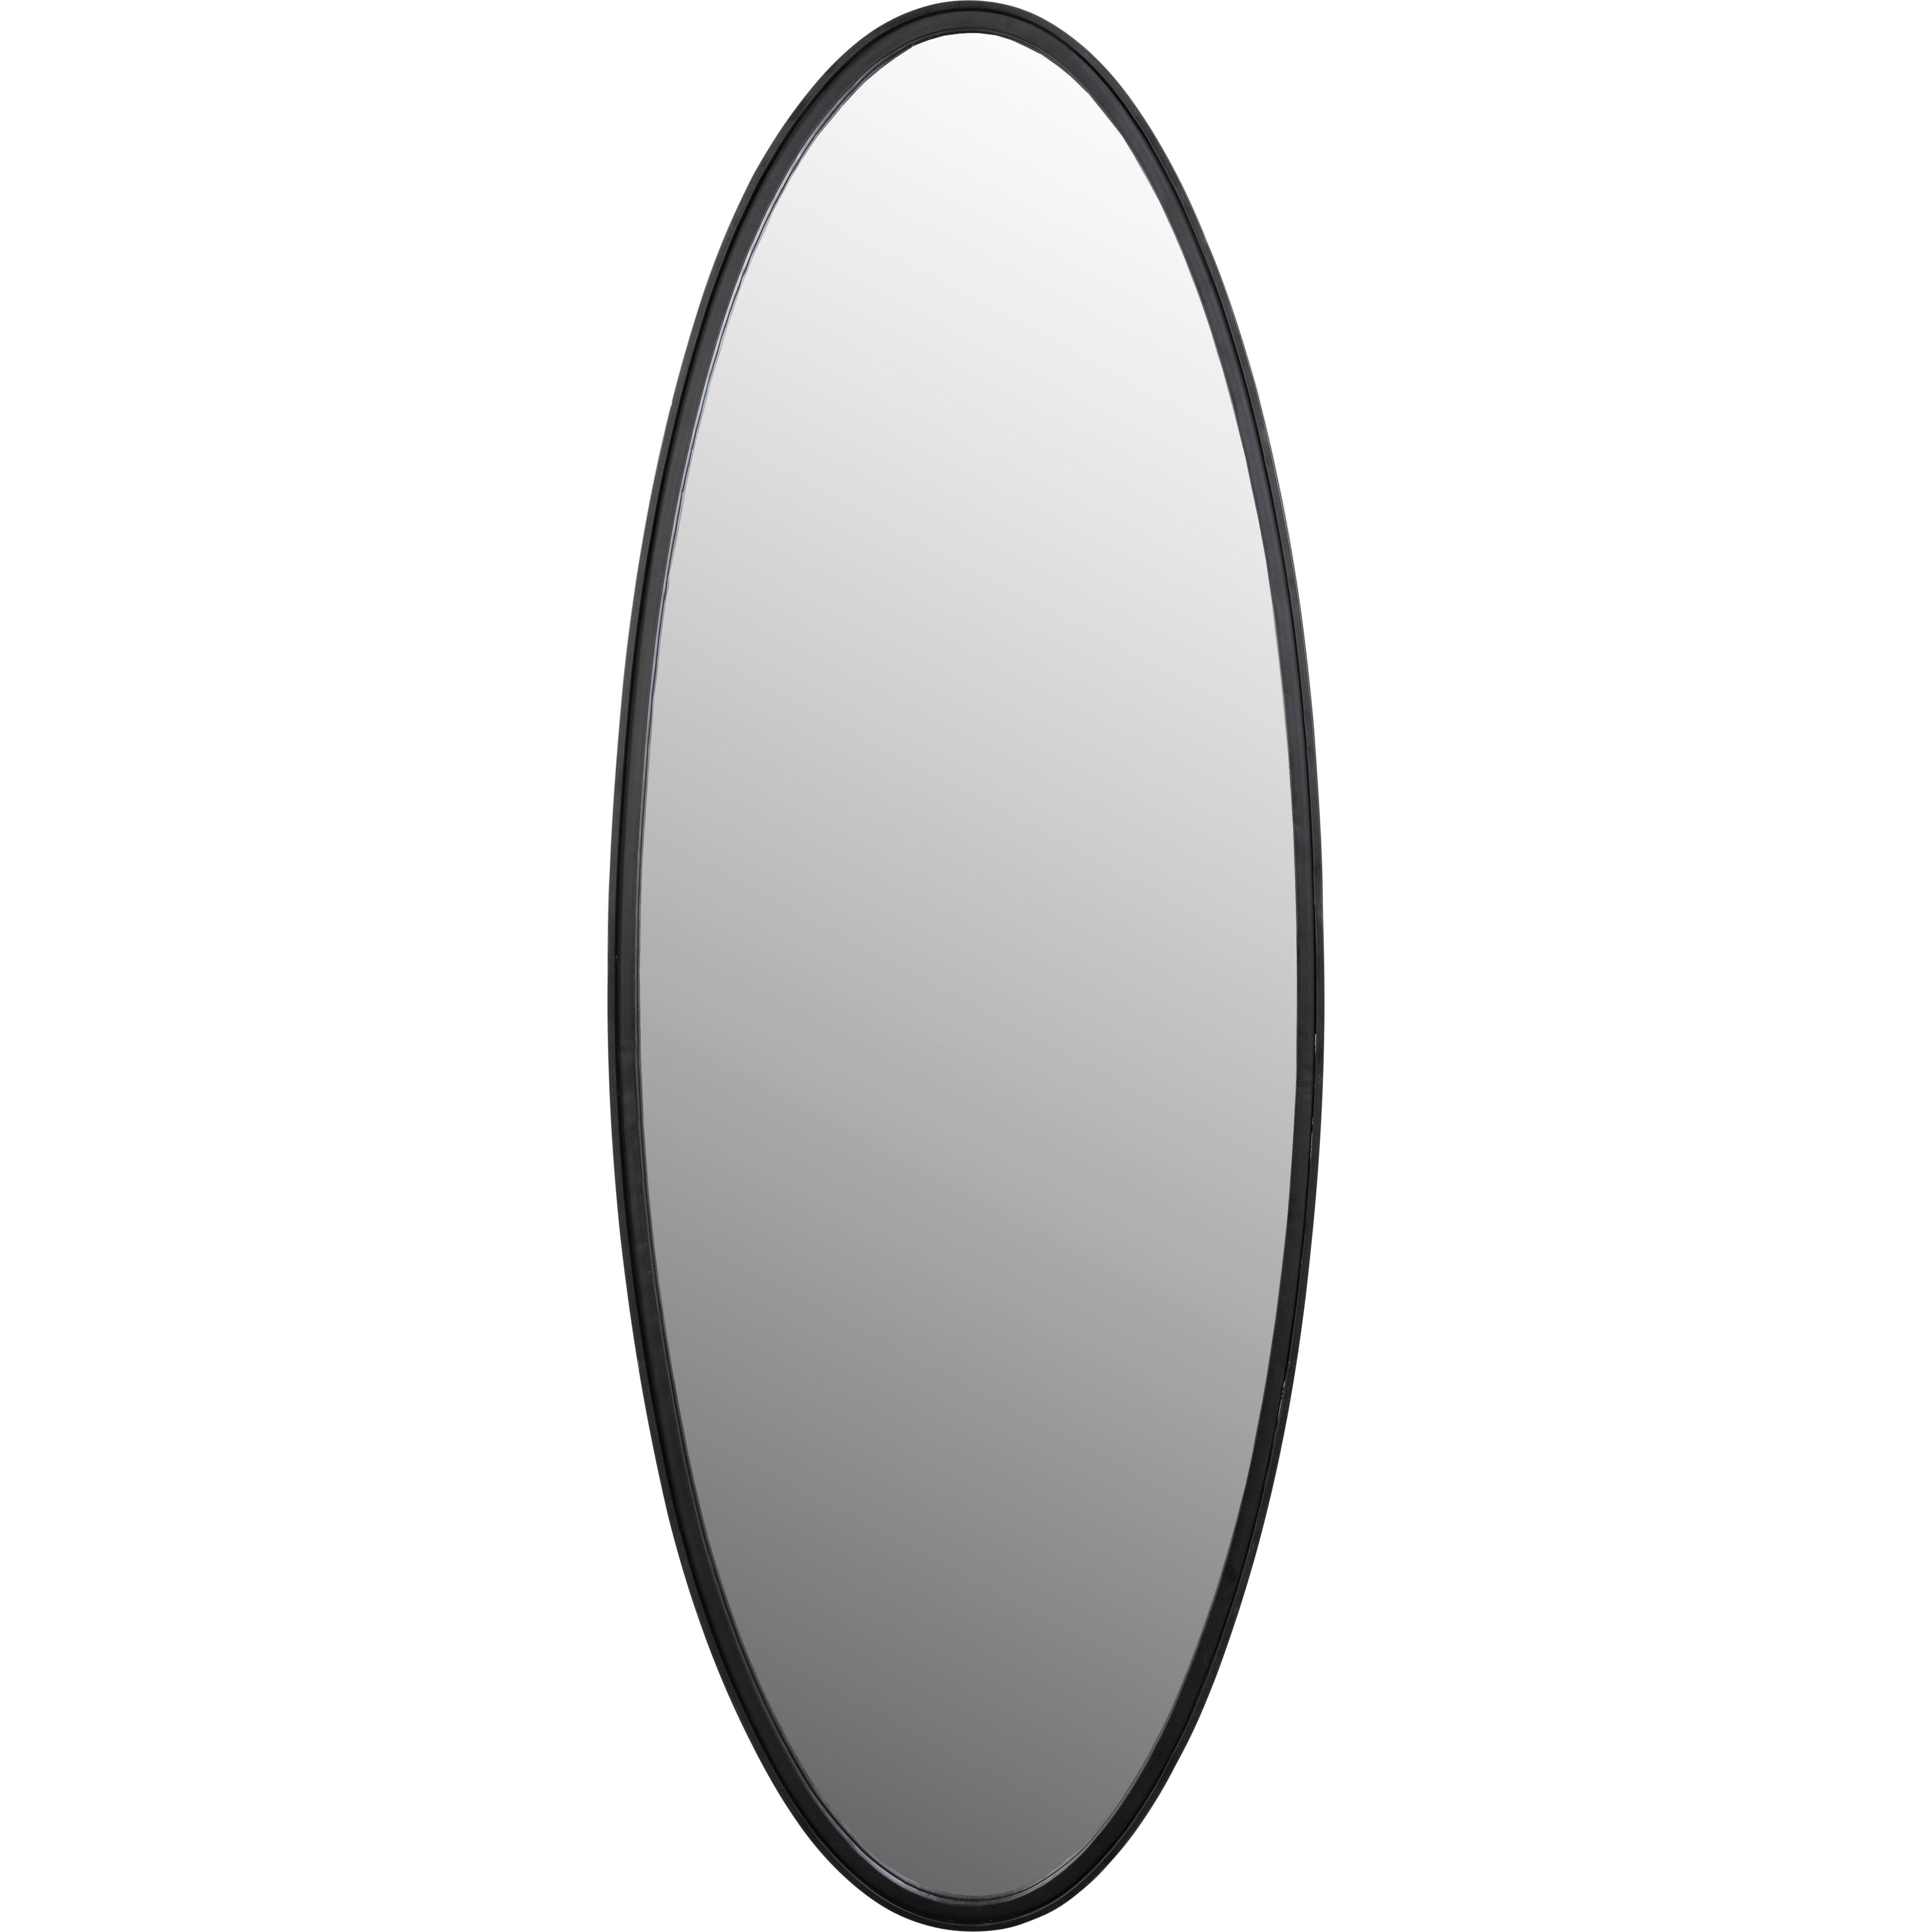 Mirror matz oval l black